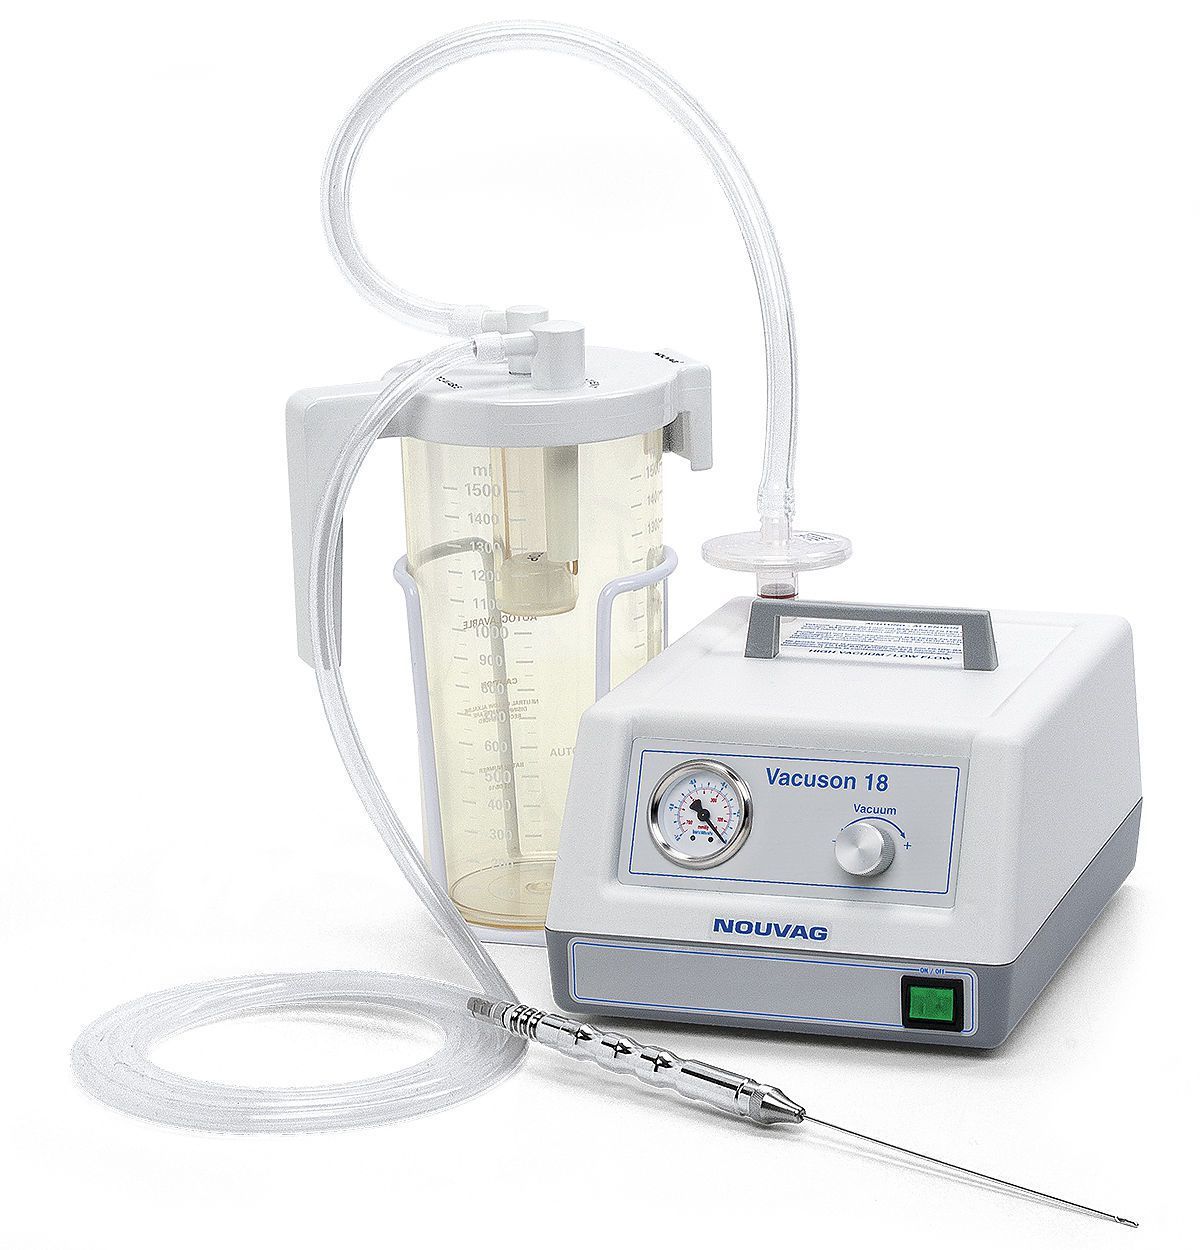 Electric surgical suction pump / handheld 18 L/min | VACUSON 18 Nouvag